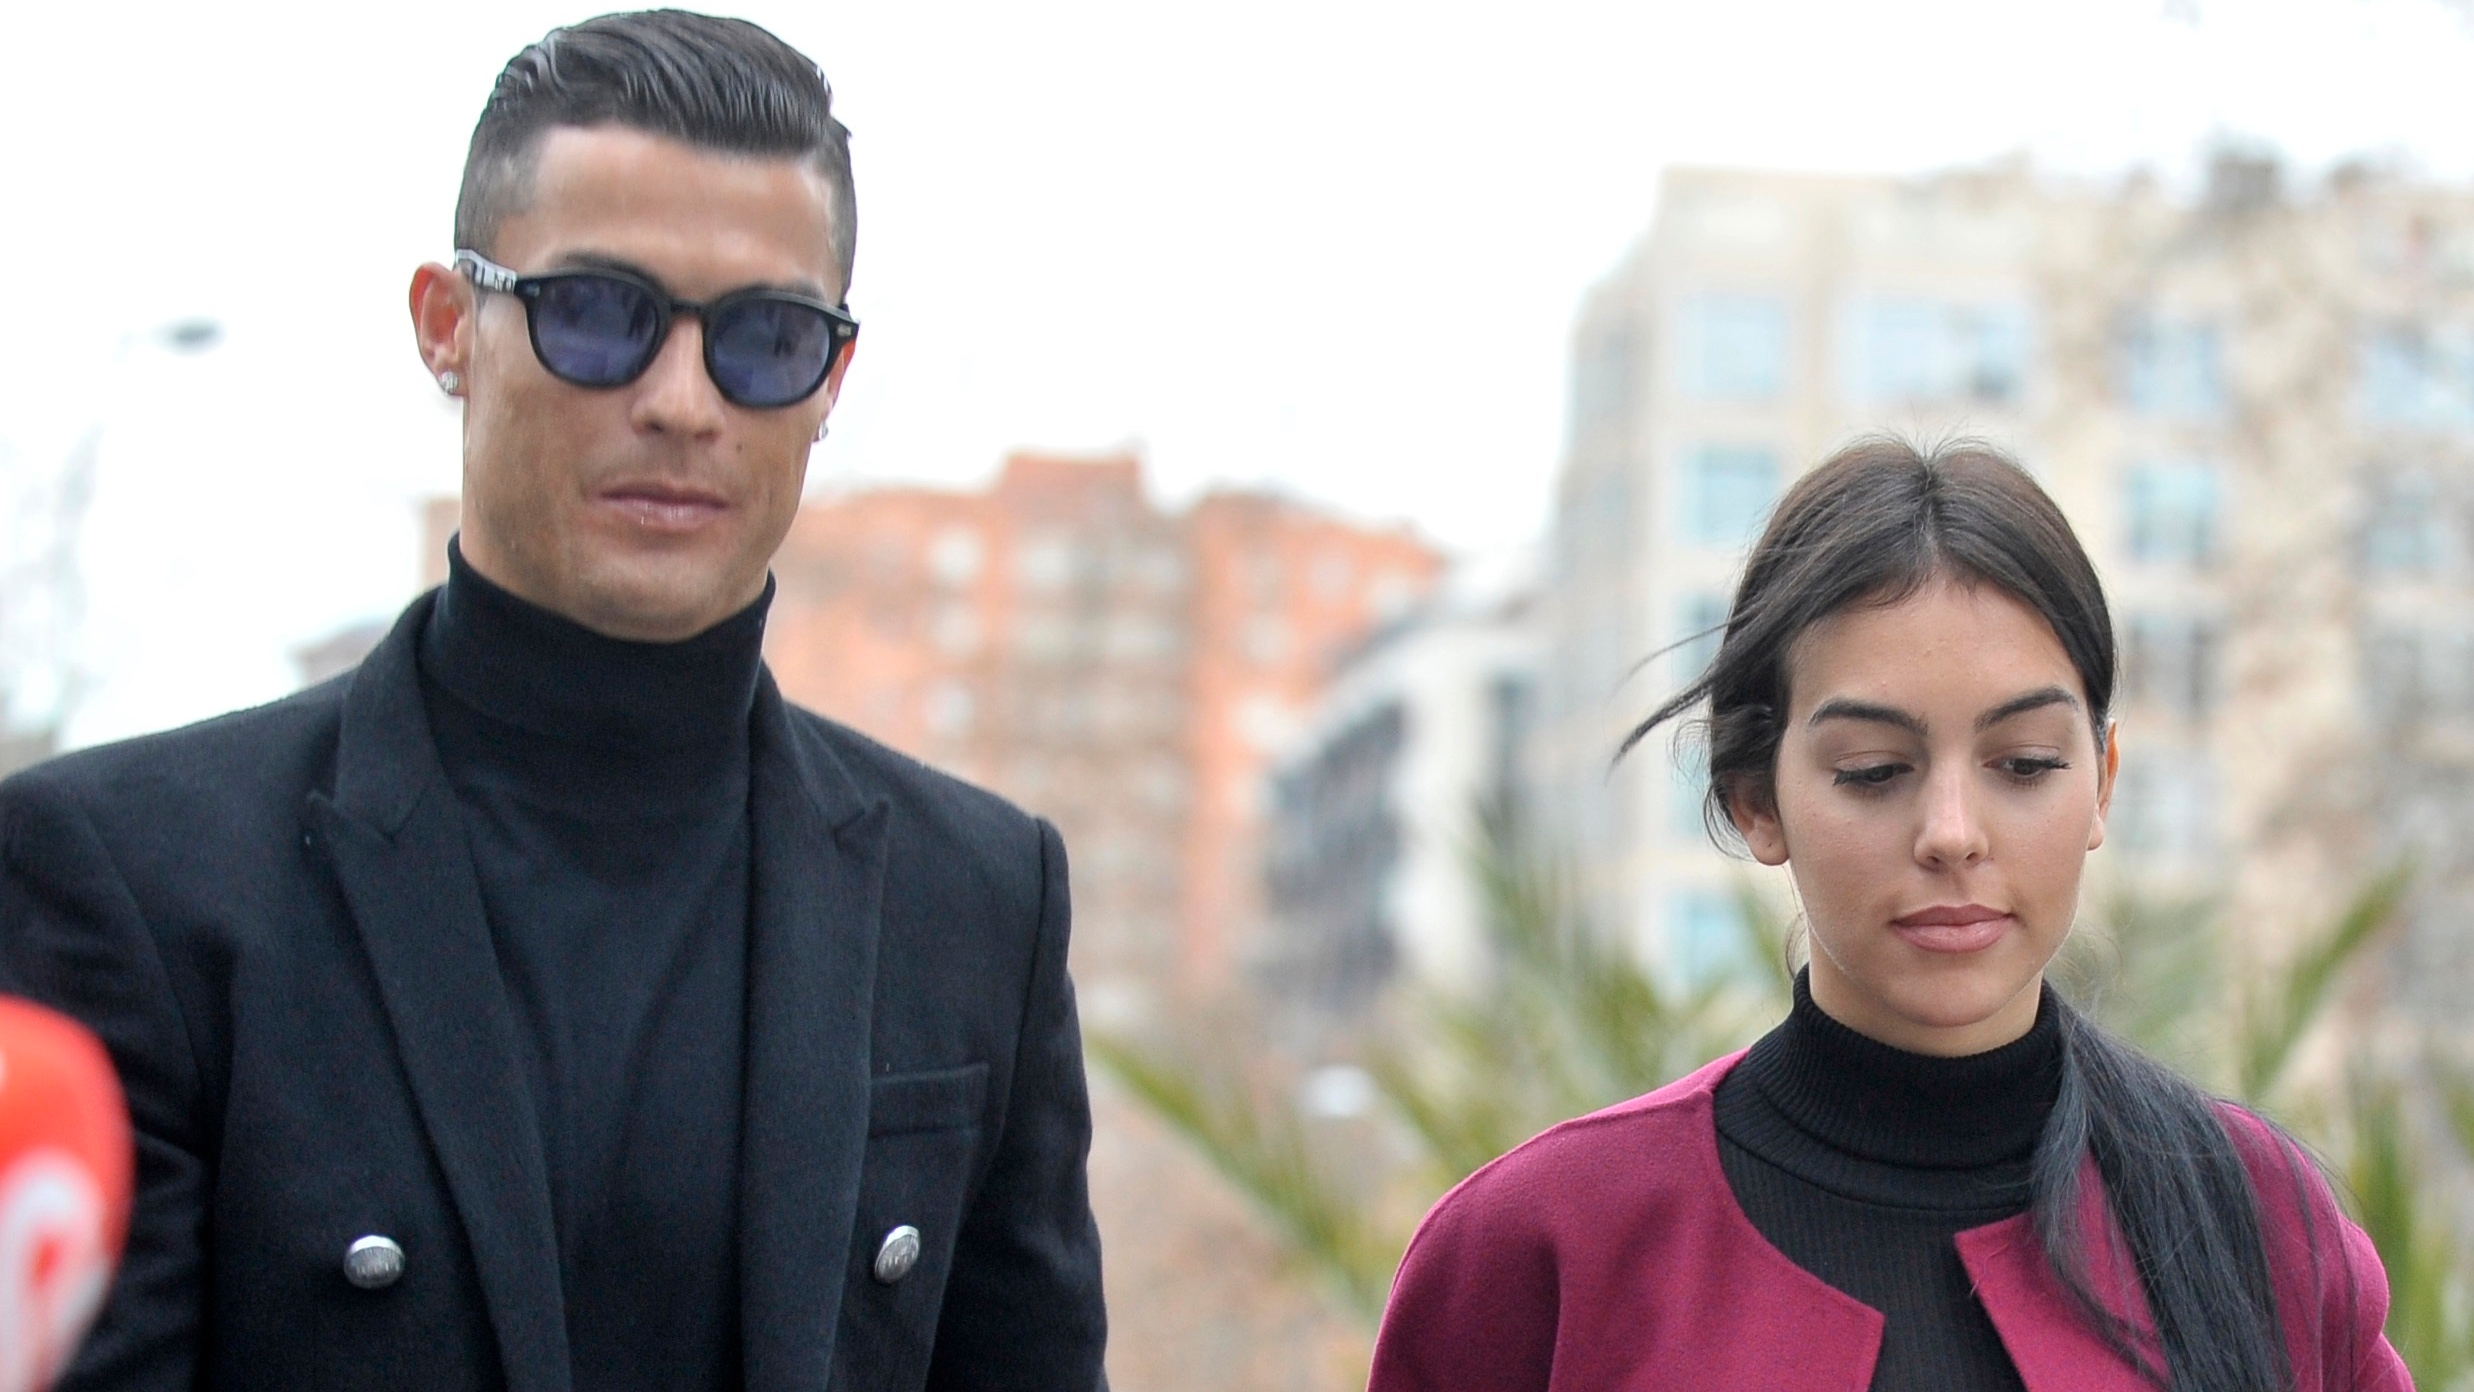 22/01/2019 Georgina Rodríguez y Cristiano Ronaldo eligieron informar la noticia a través de un comunicado
(DEPORTES EUROPA ESPAÑA SOCIEDAD JOSÉ OLIVA)
